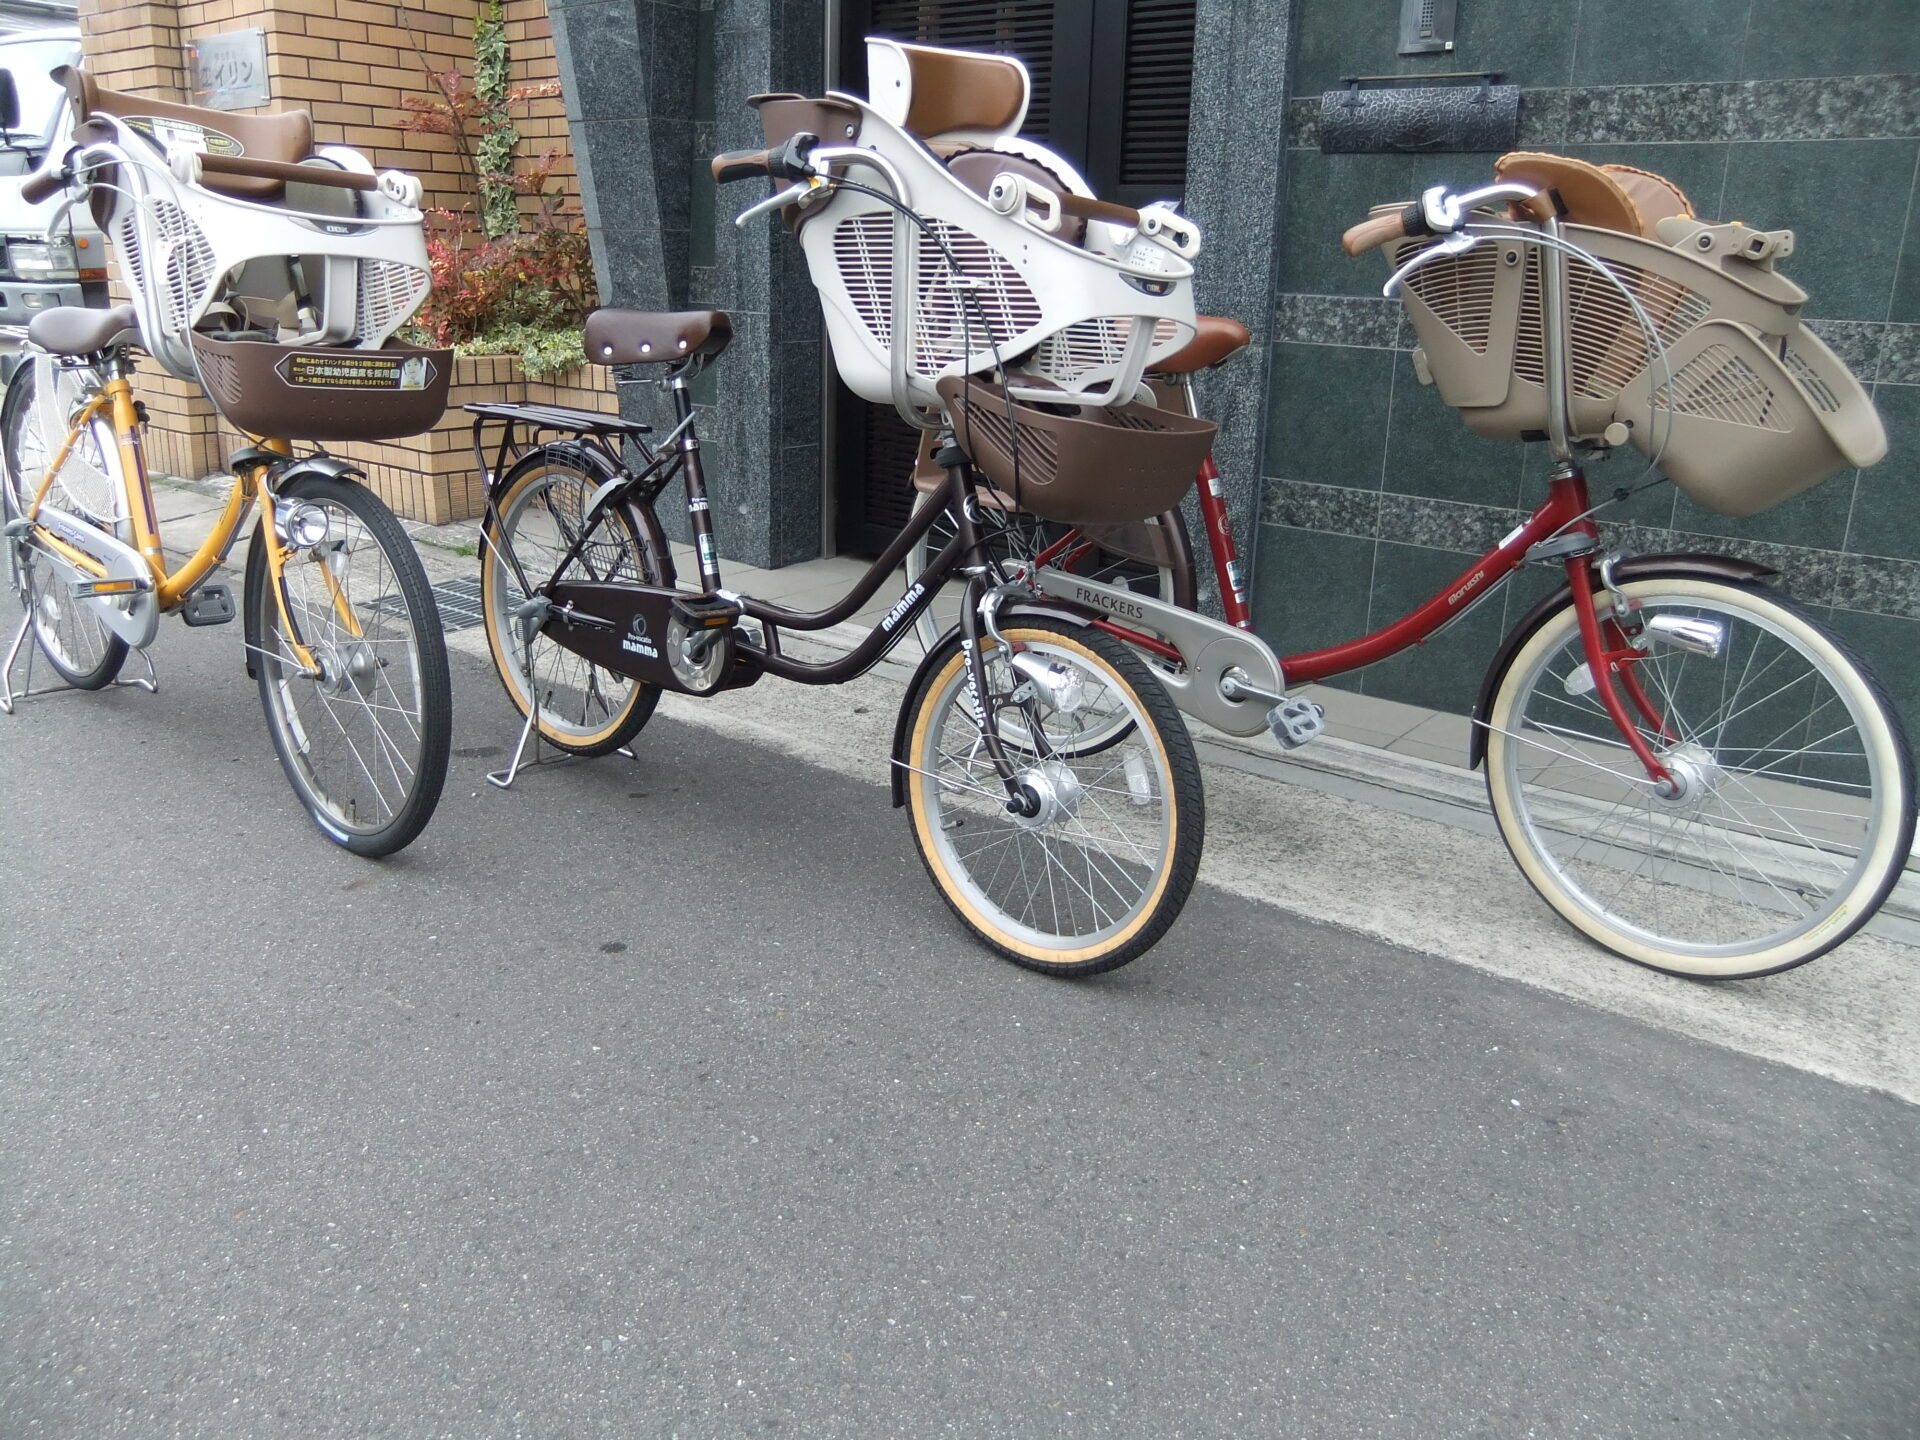 おしゃれ子供乗せ中古自転車の入荷 京都の中古自転車 新車販売 サイクルショップ エイリン